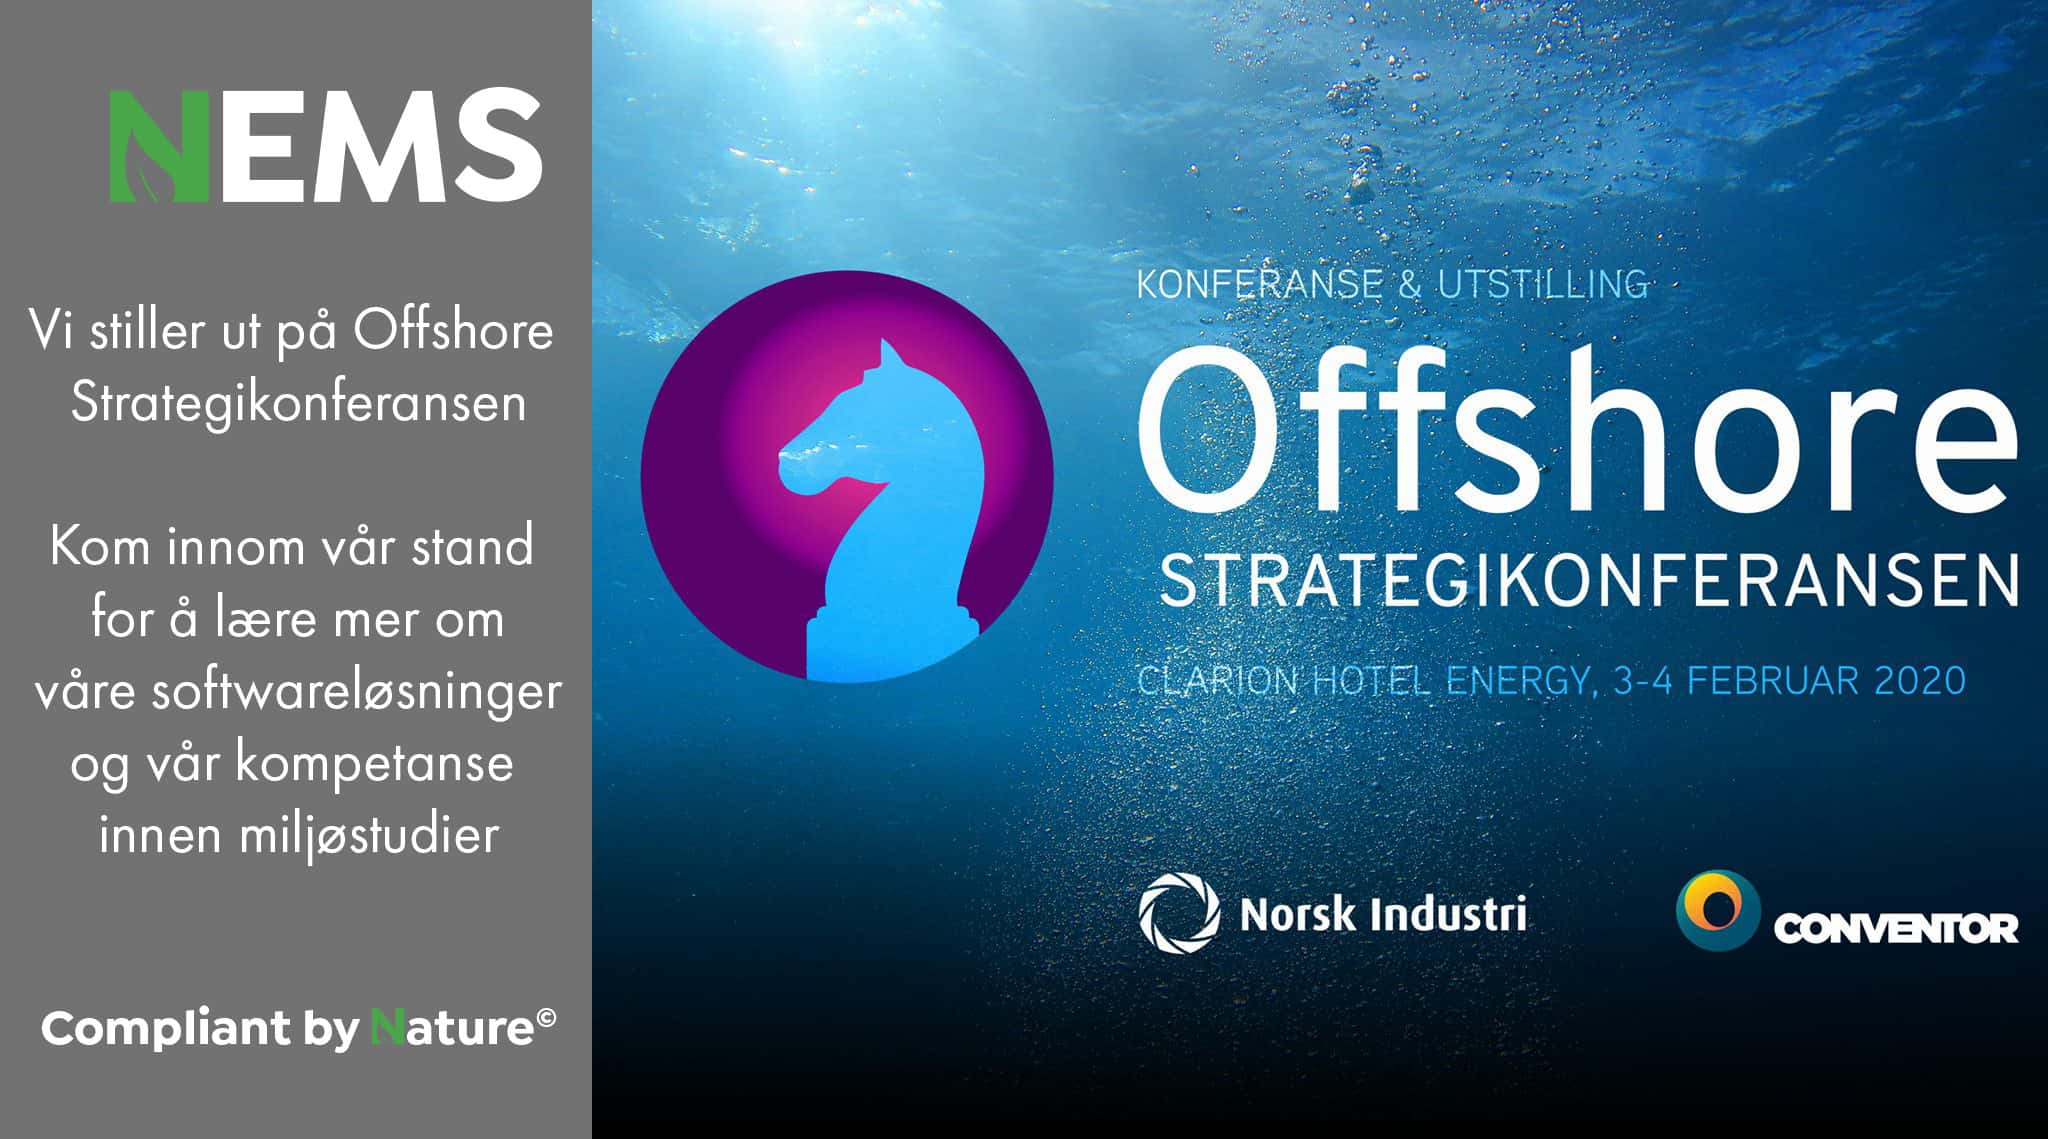 NEMS er utstiller på Offshore Strategikonferansen 3.-4. februar 2020